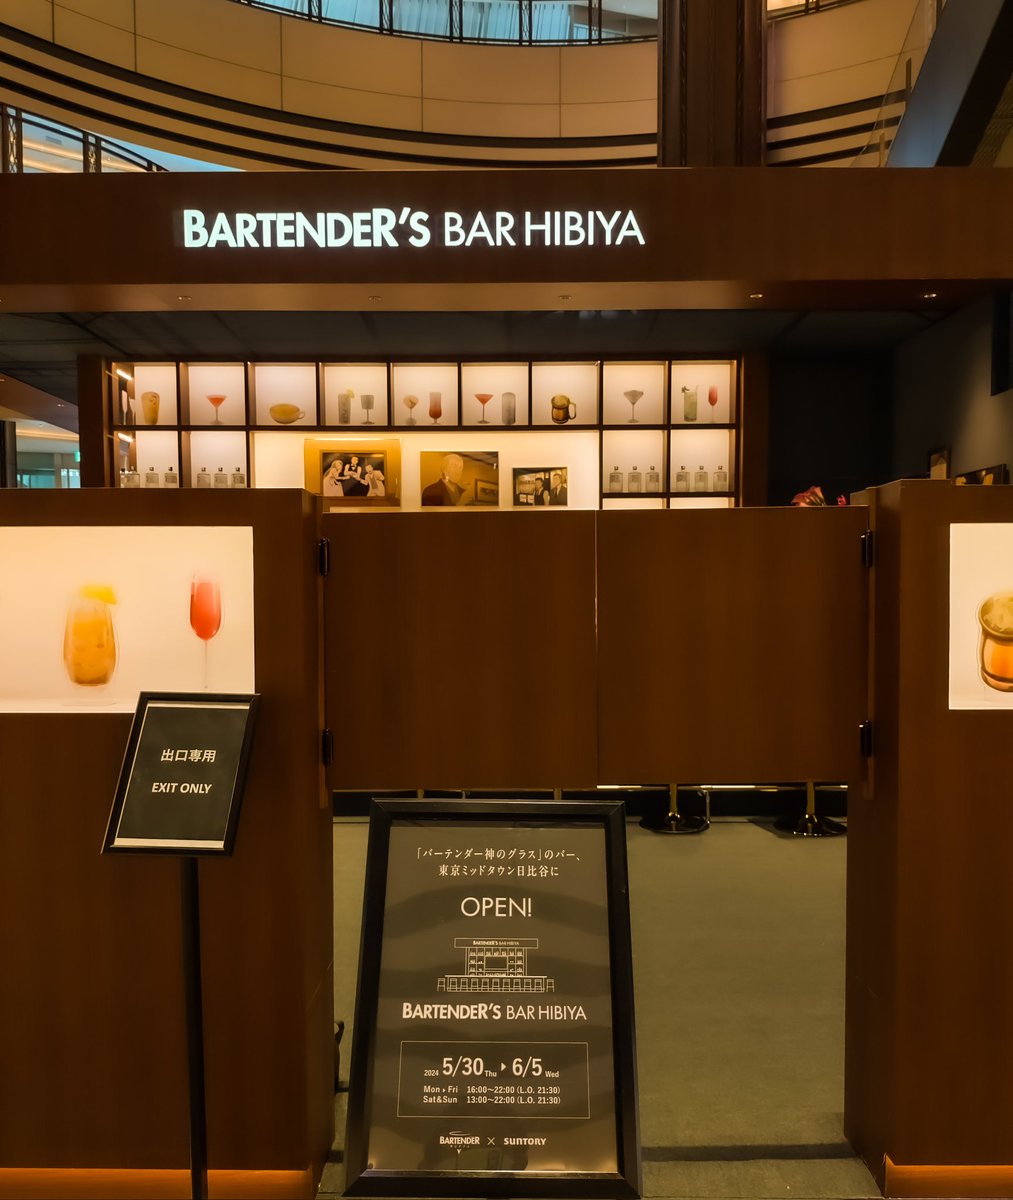 東京ミッドタウン日比谷を通りがかったら、バーテンダーズバーというイベントが準備中でした。お酒とアニメ・原作に興味のある方は訪れてみては？
#バーテンダー 
#SUNTORY 
#BARTENDERSBARHIBIYA 
#東京ミッドタウン日比谷